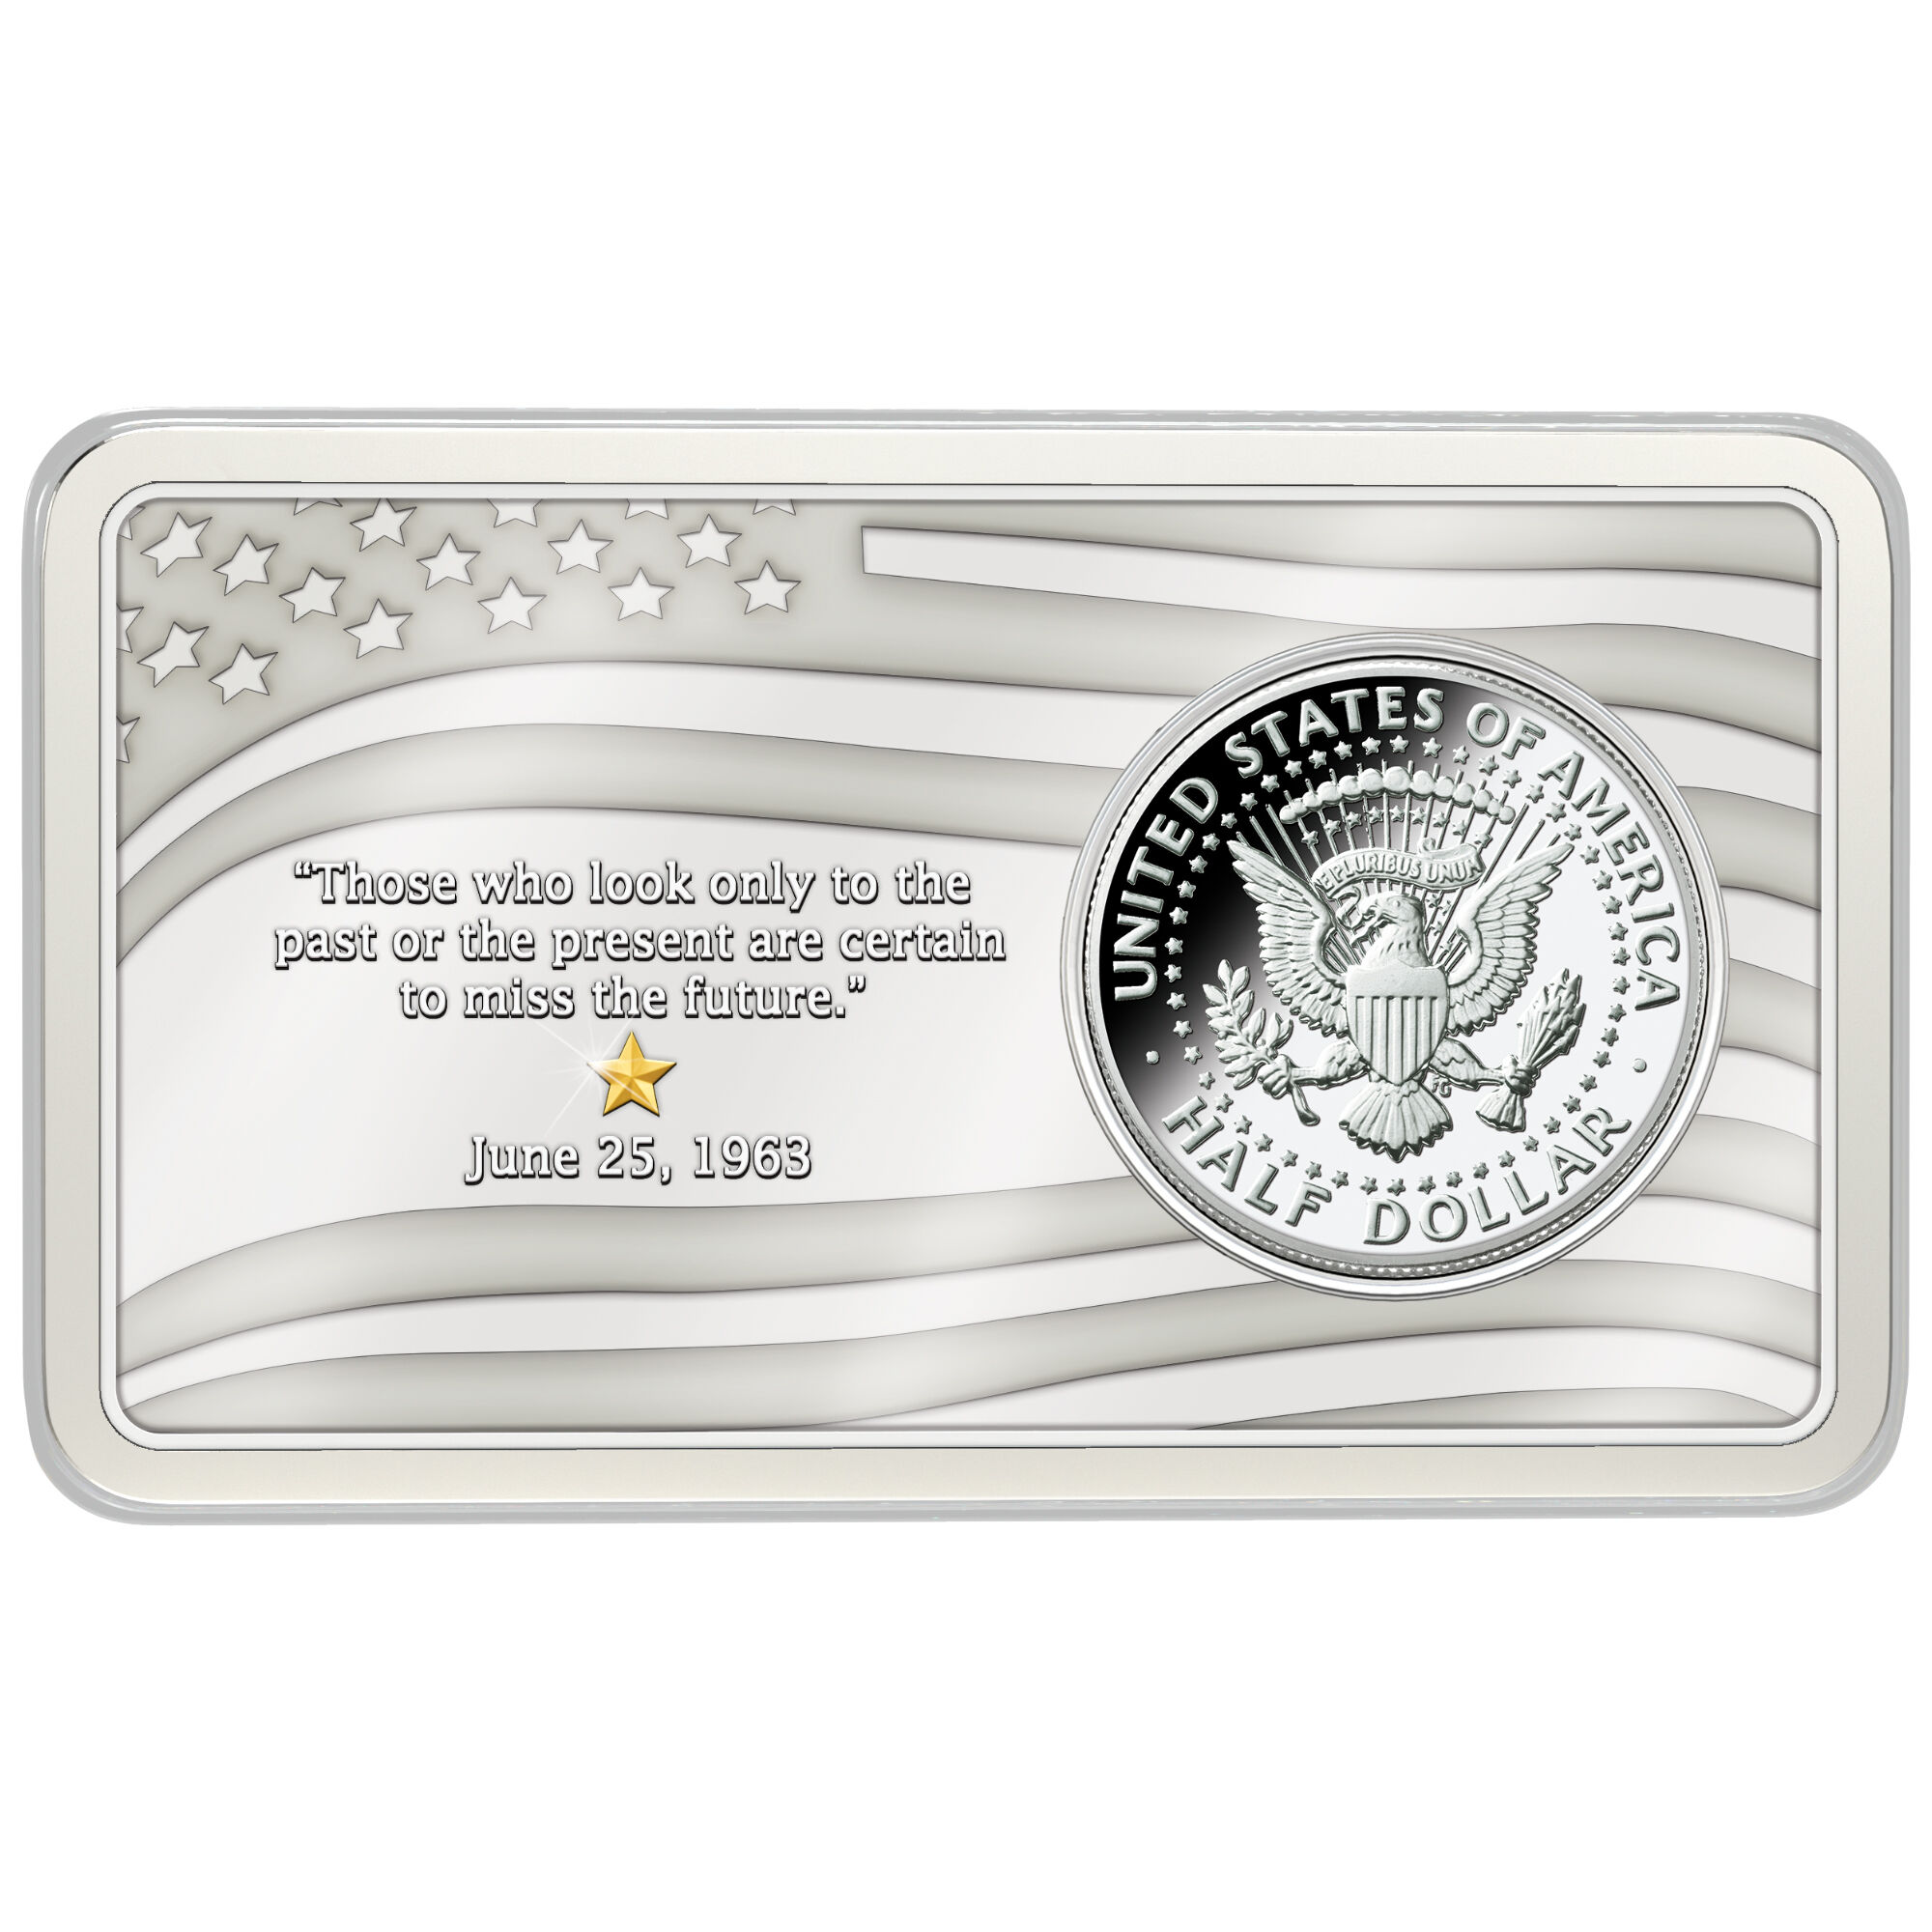 The Kennedy Silver Half Dollar Inaugural Year Mint Mark Set 10646 0017 b ingot